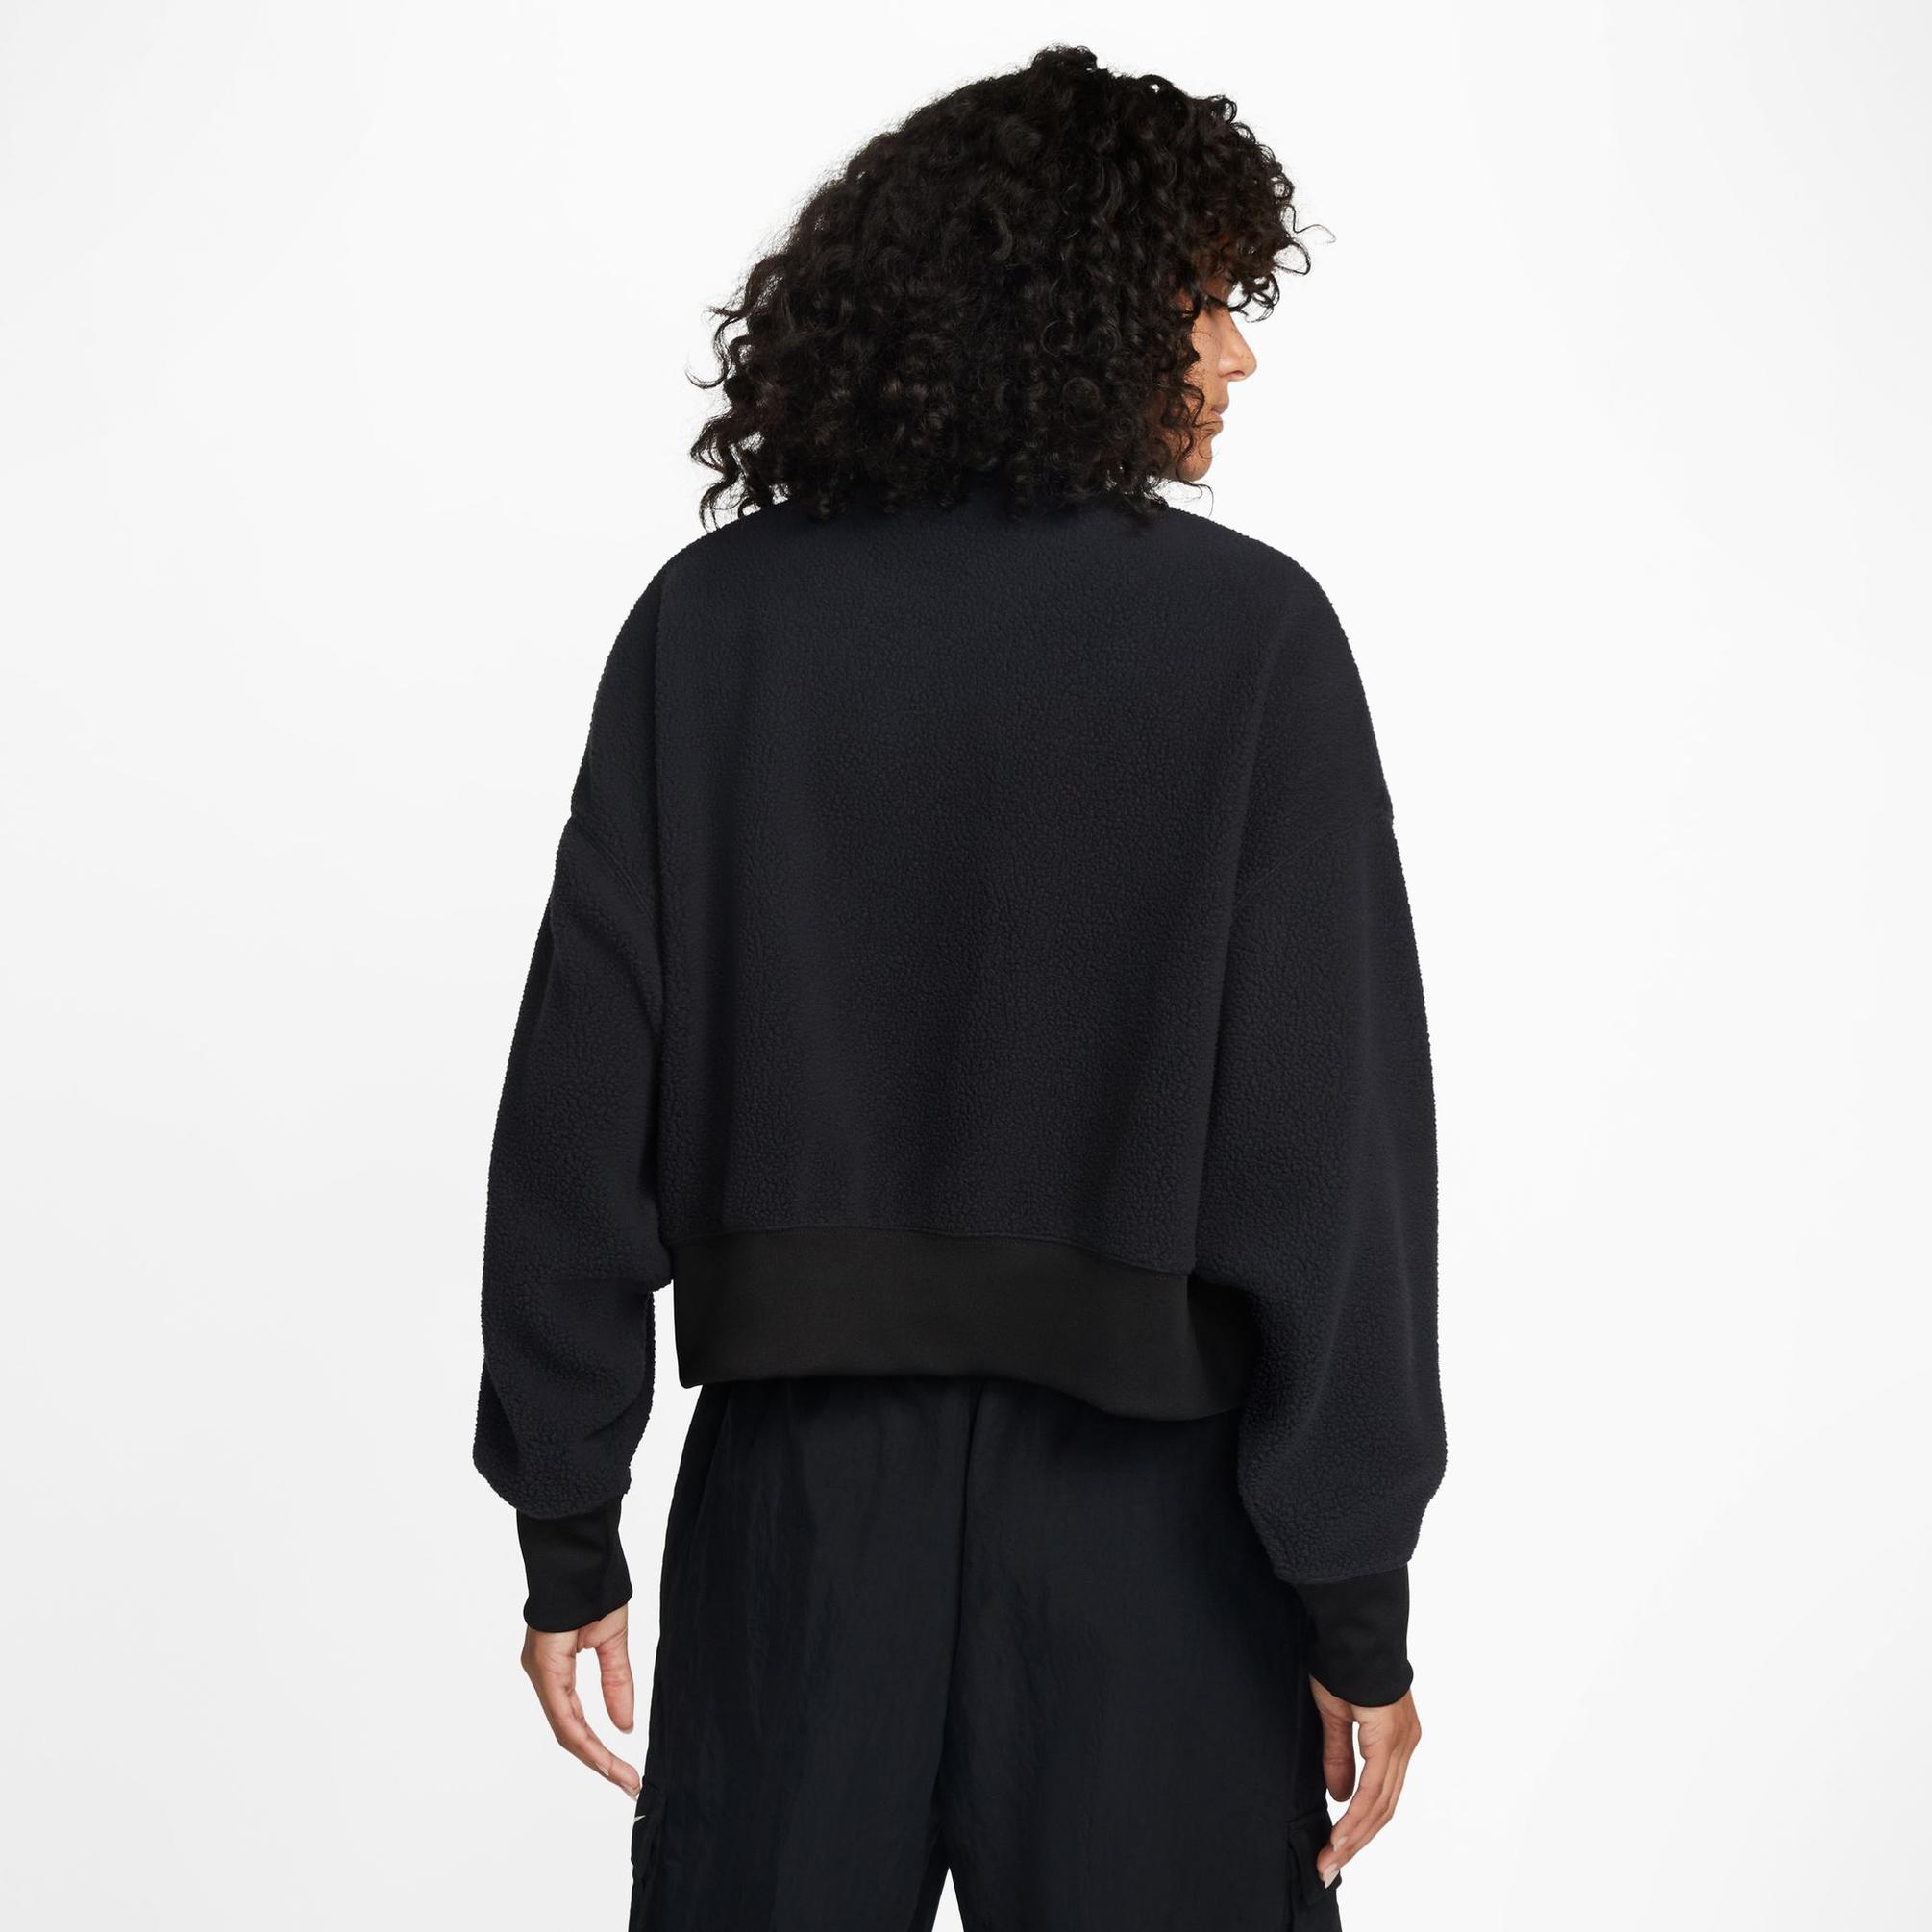  Nike Sportswear Plush Kısa Sıfır Yaka Kadın Siyah Sweatshirt